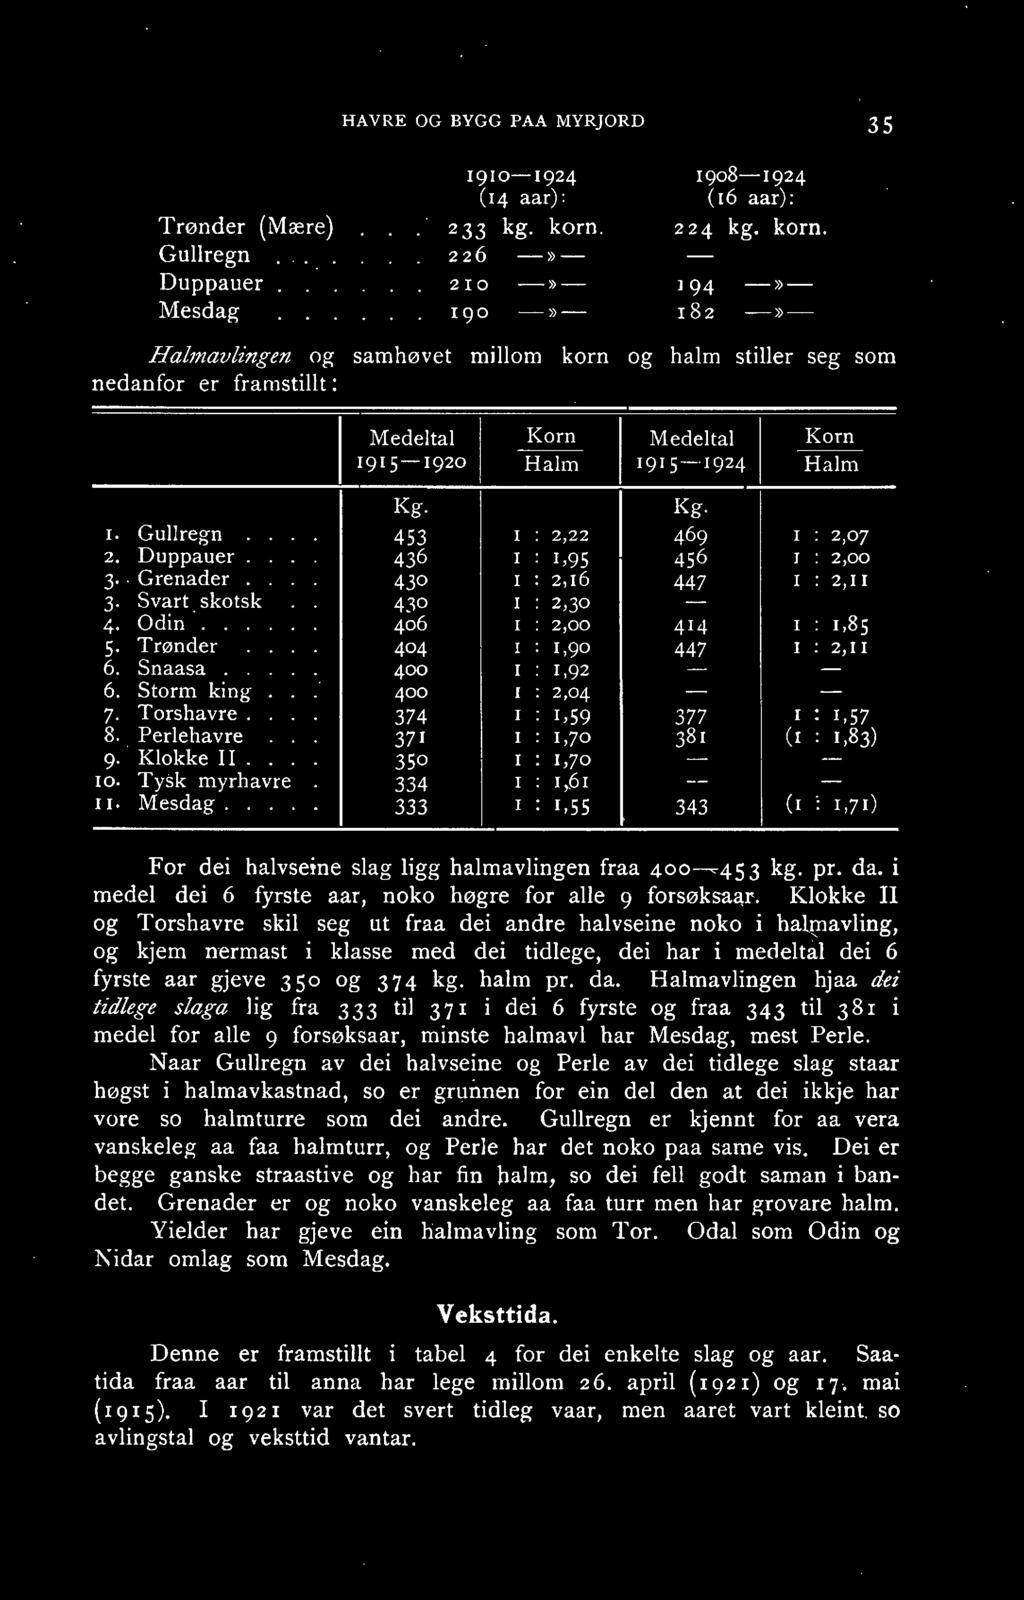 194 -)) r82 ->>- Halmavlingen og samhøvet millom korn og halm stiller seg som nedanfor er framstillt : Medeltal - 1915-1920 Korn Halm Medeltal 1915--1924 Korn Halm Kg. Kg. 1. Gullregn.